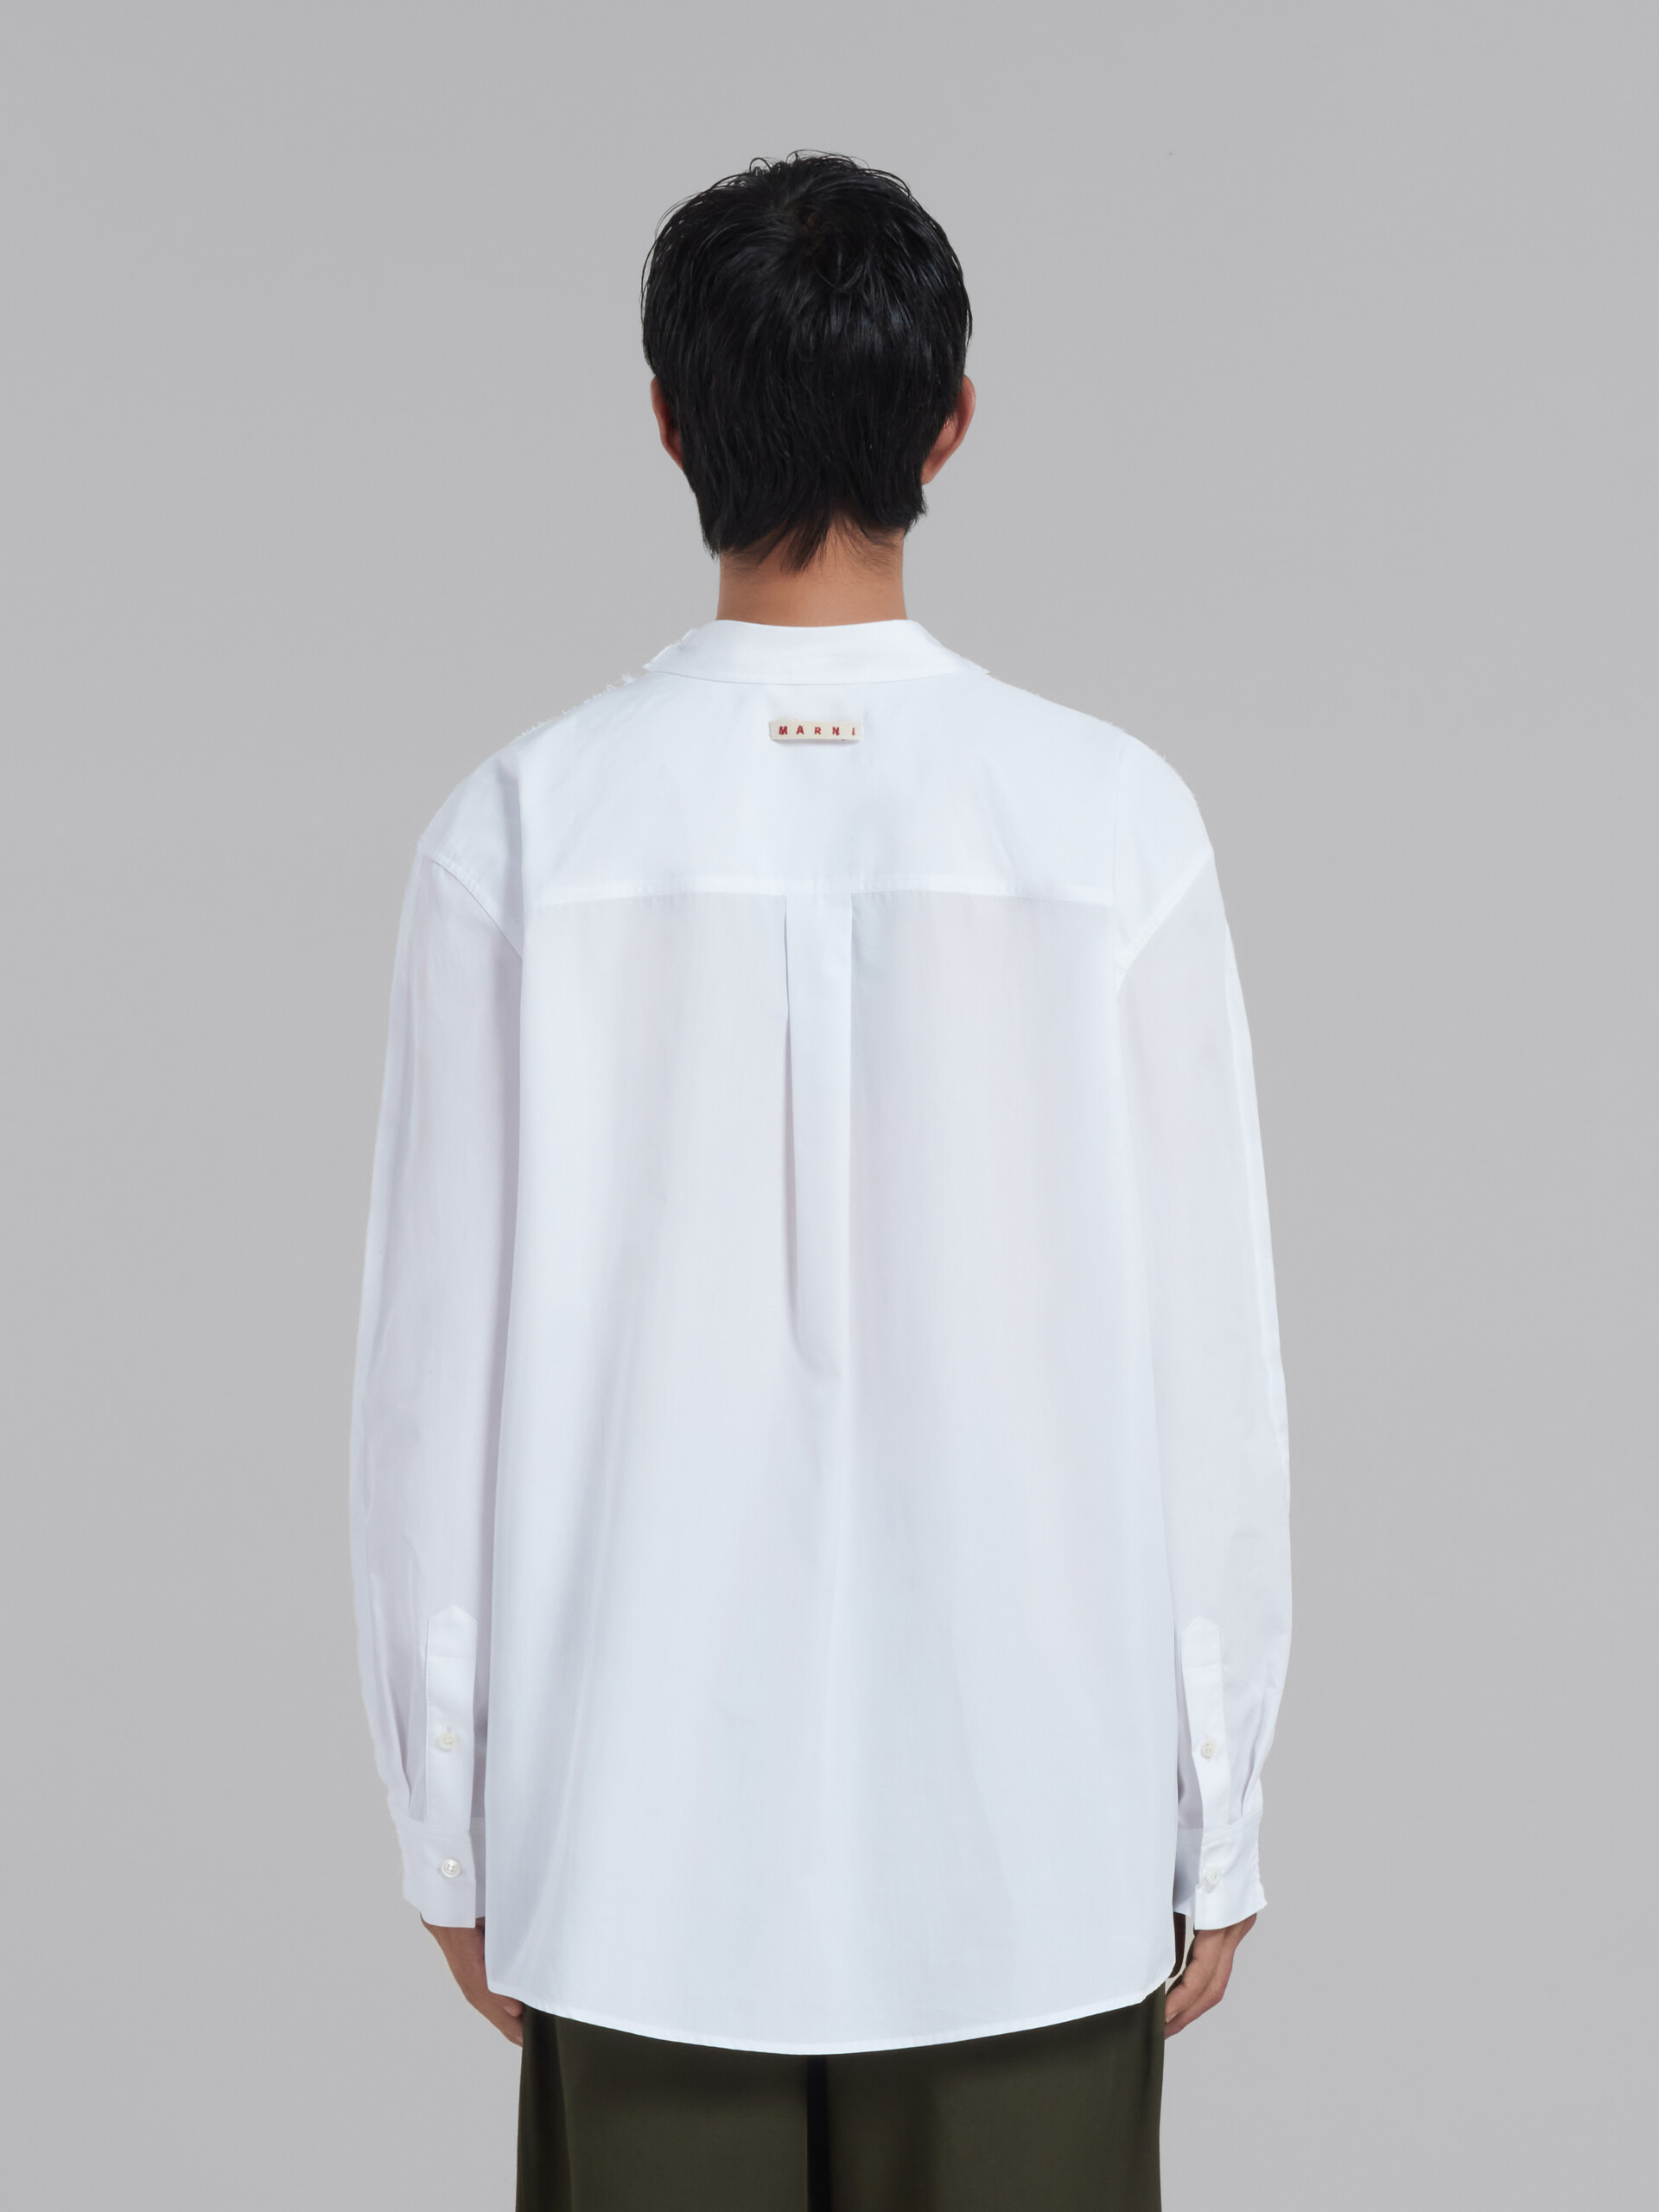 T-shirt à manches longues en coton biologique blanc avec empiècement au dos - T-shirts - Image 3